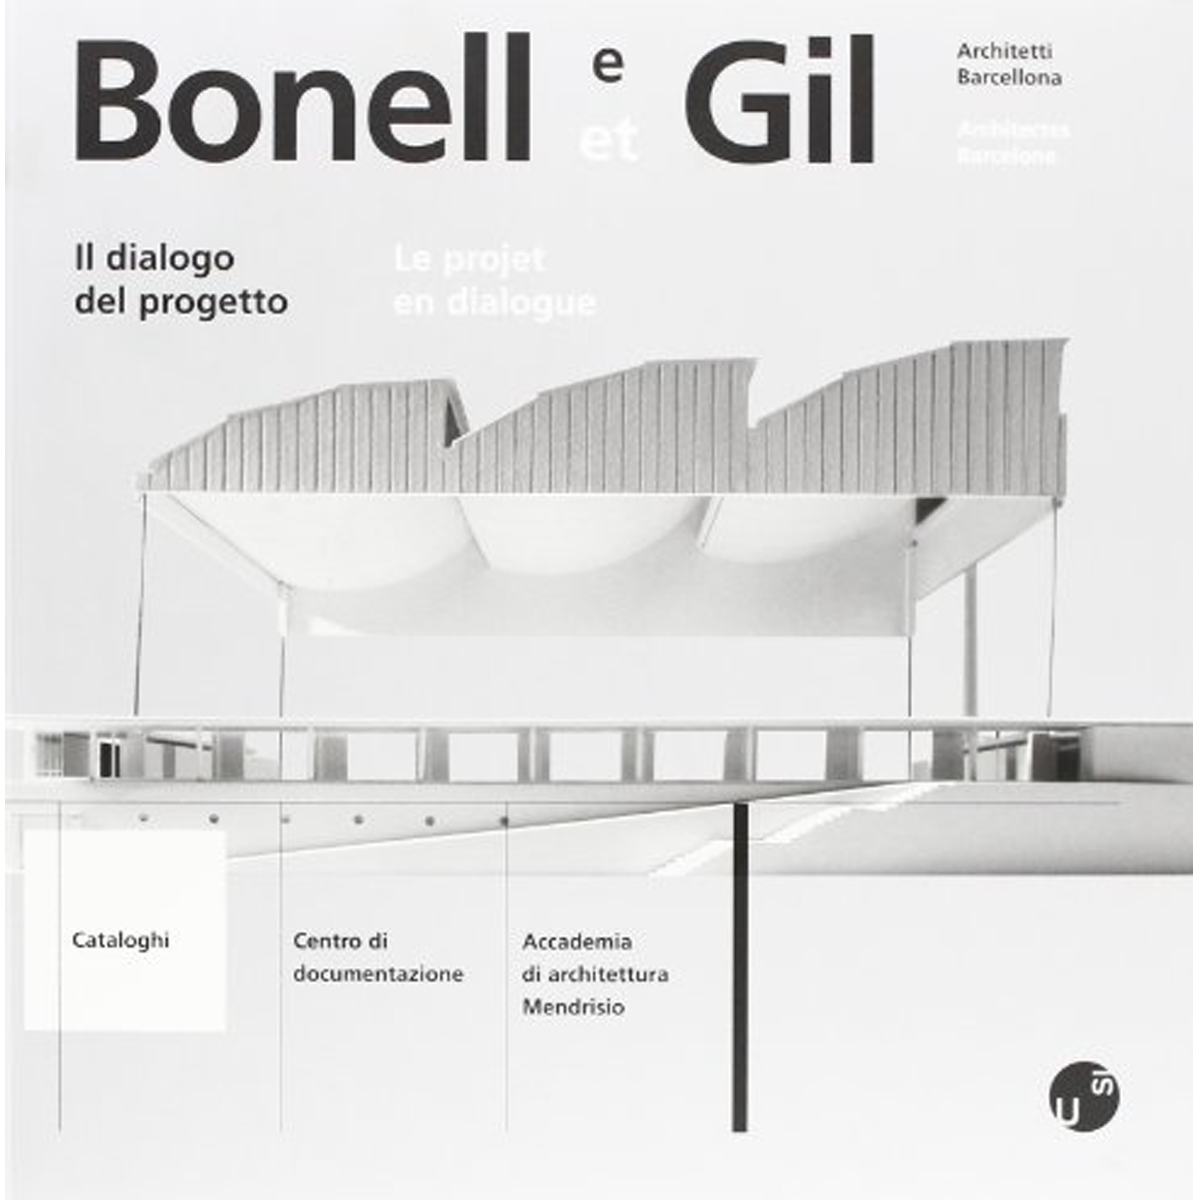 Bonell e Gil Architetti Barcelona: Il dialogo del progetto